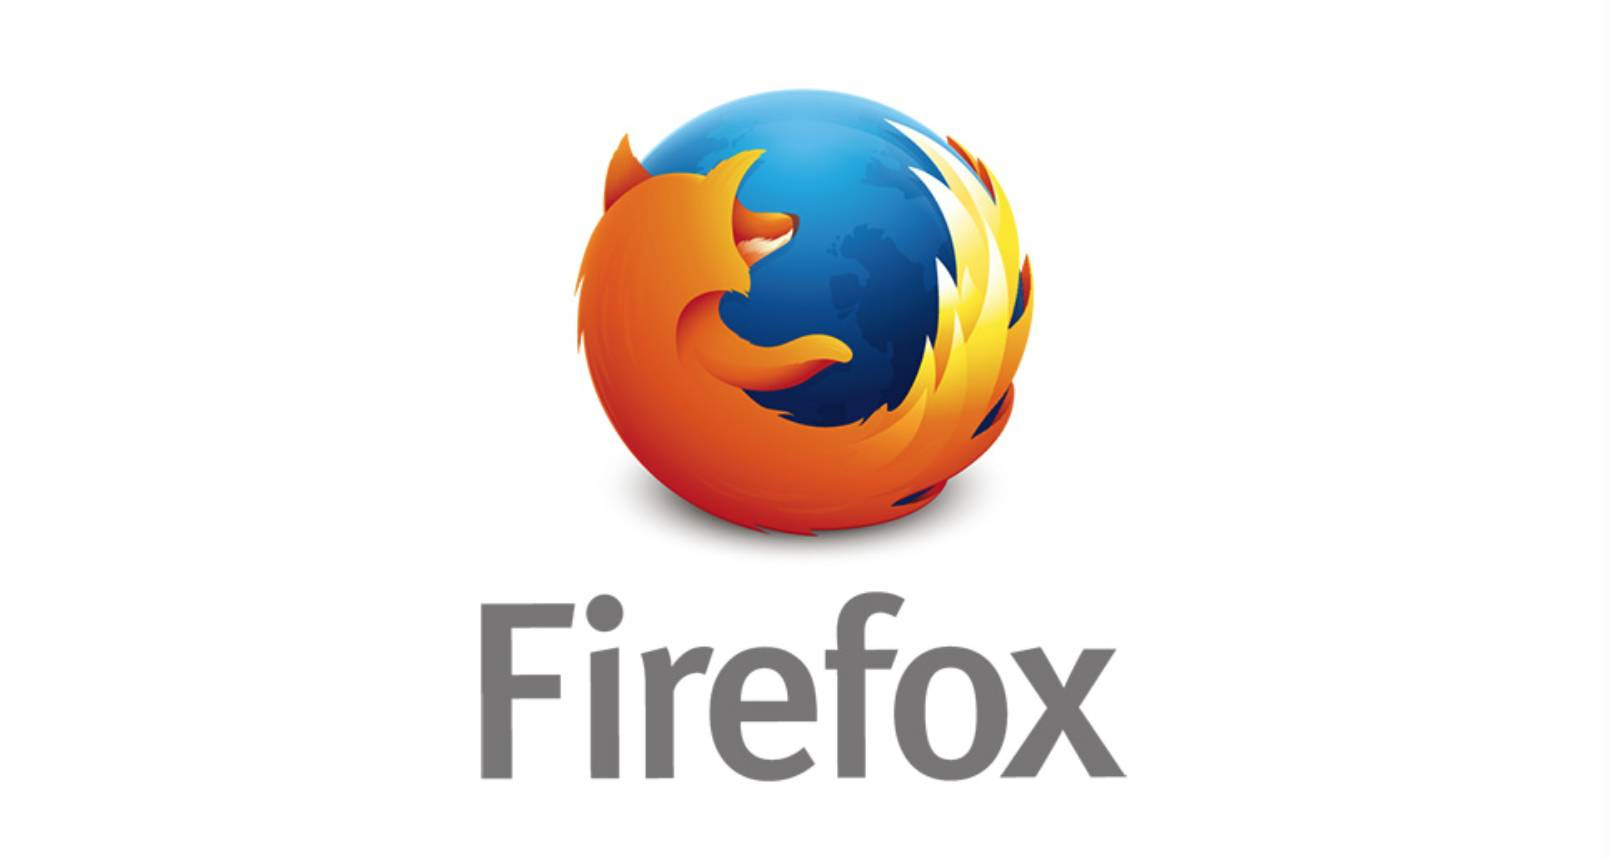 火狐浏览器苹果版下载:一款非常智能安全的手机强大浏览器